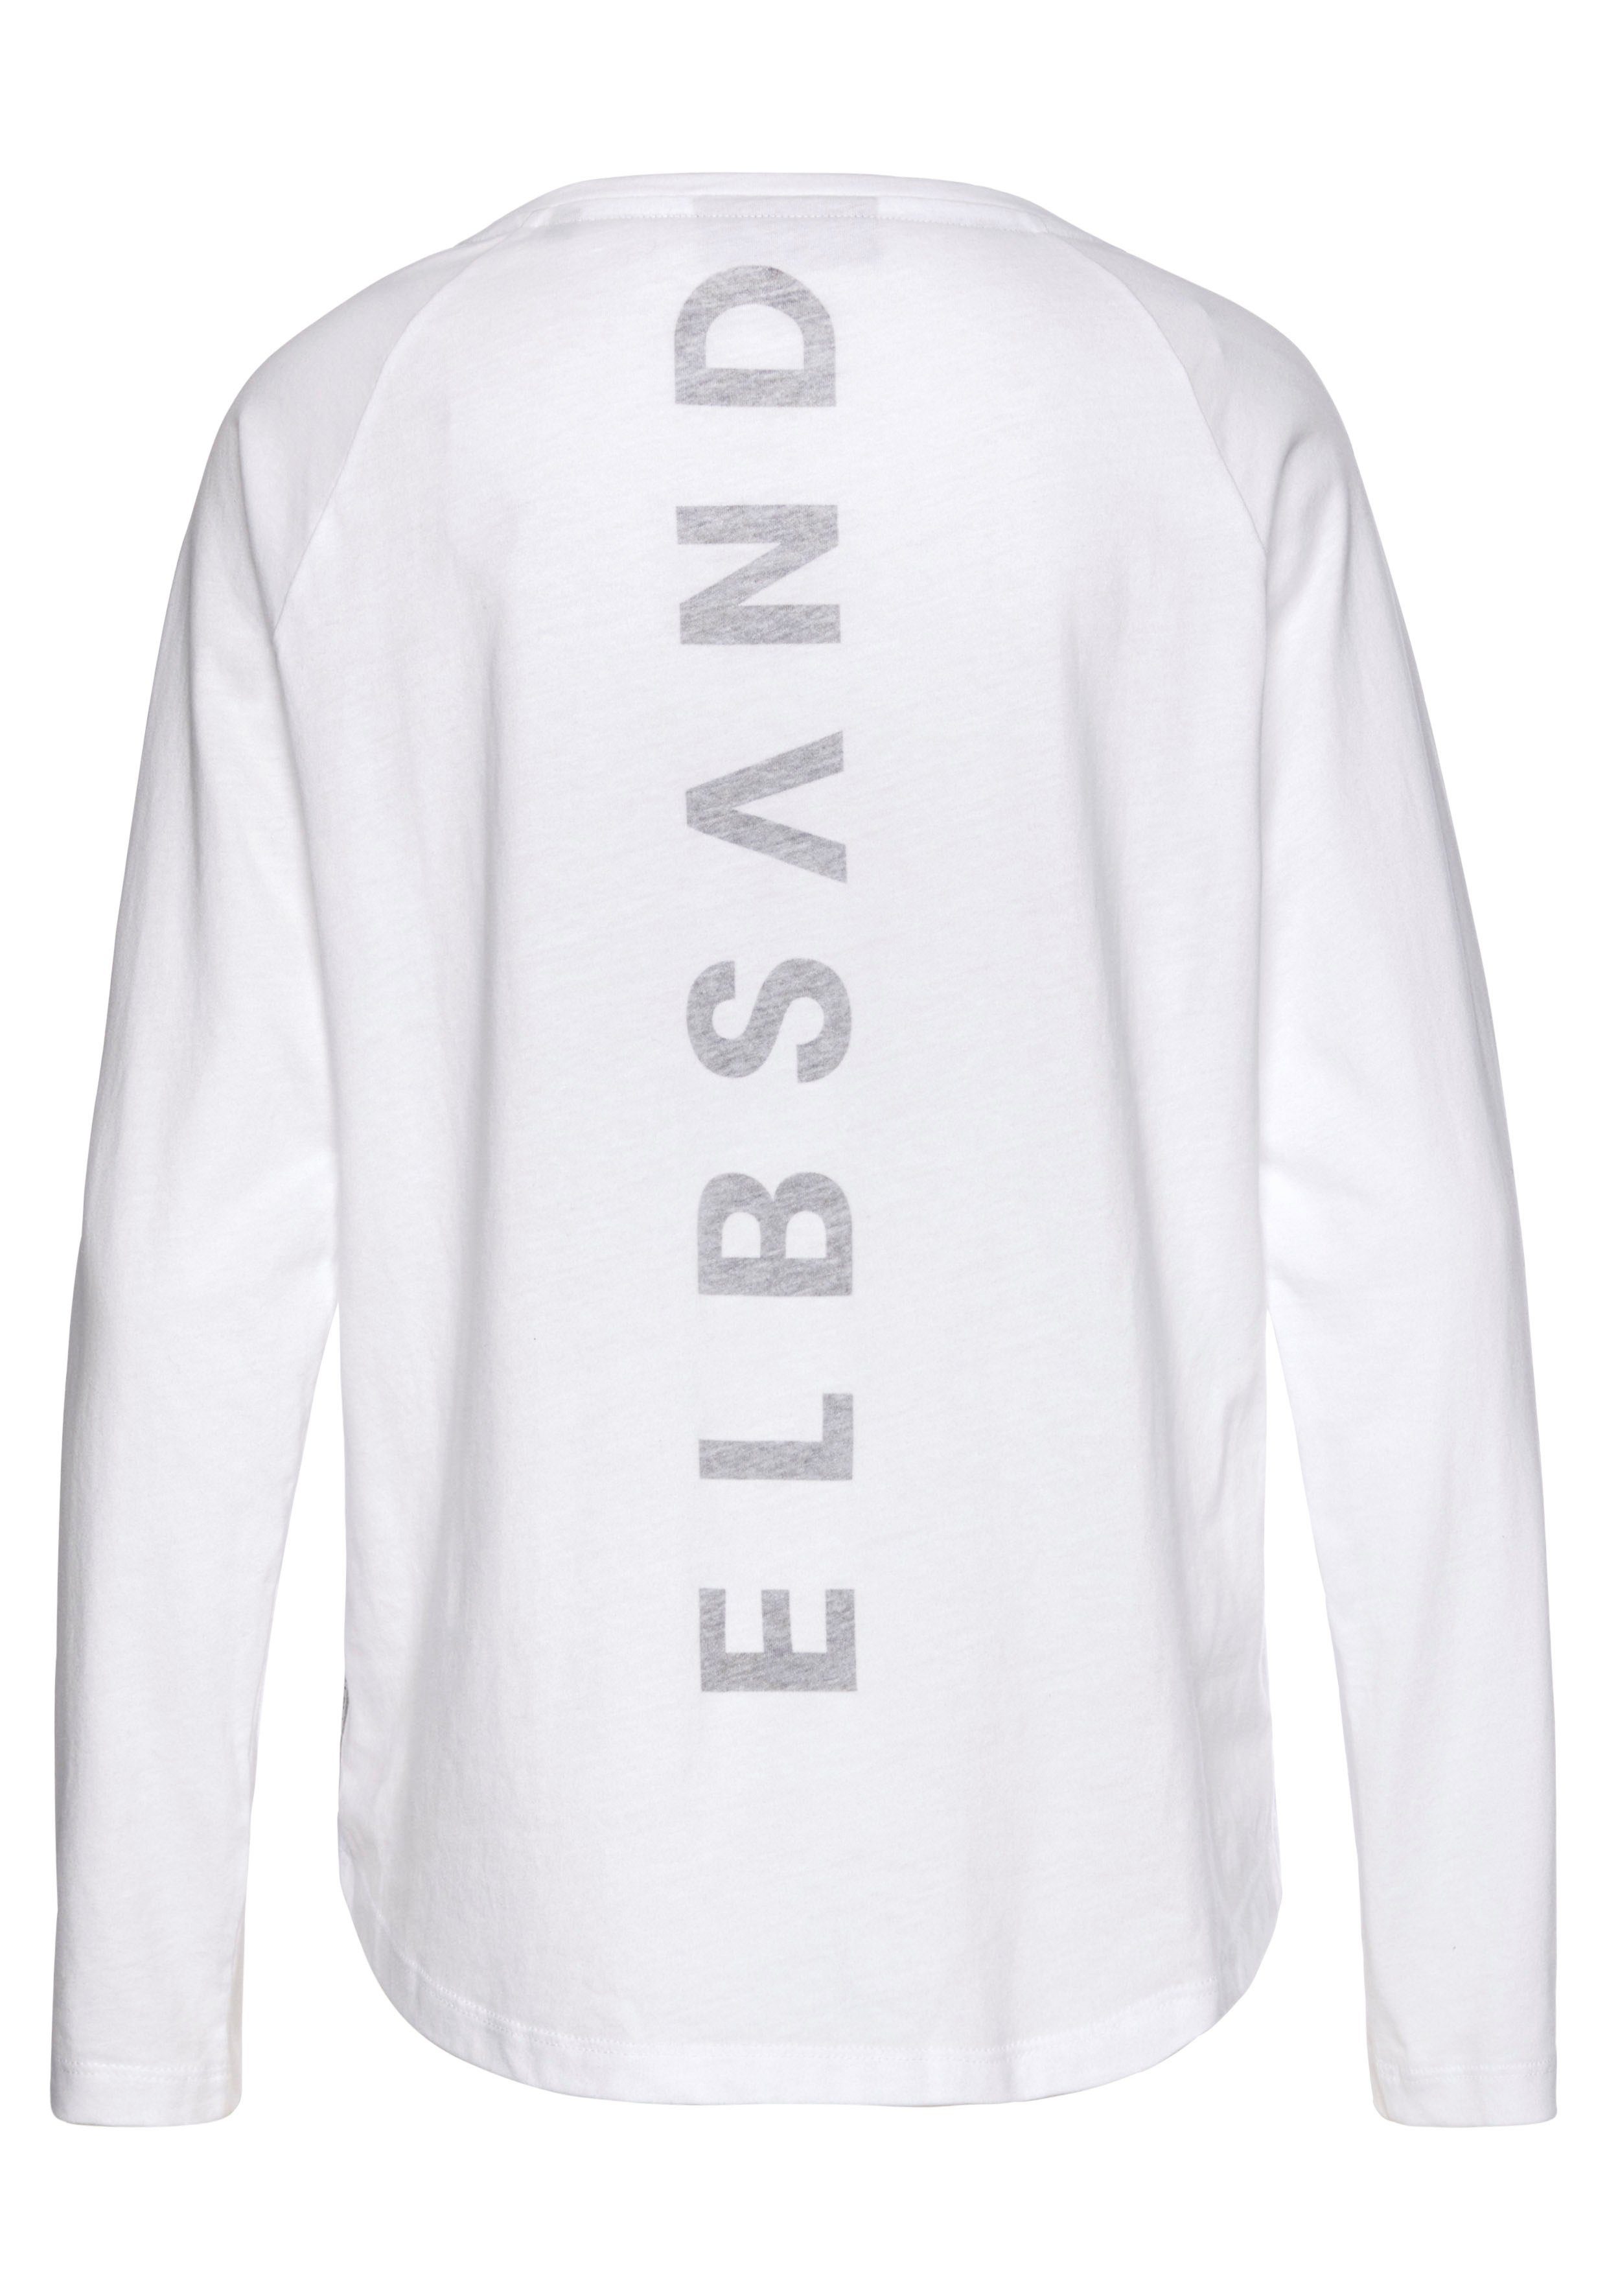 Logodruck Tinna Langarmshirt weiß Elbsand aus sportlich-casual Longsleeve mit hinten, Baumwoll-Mix,